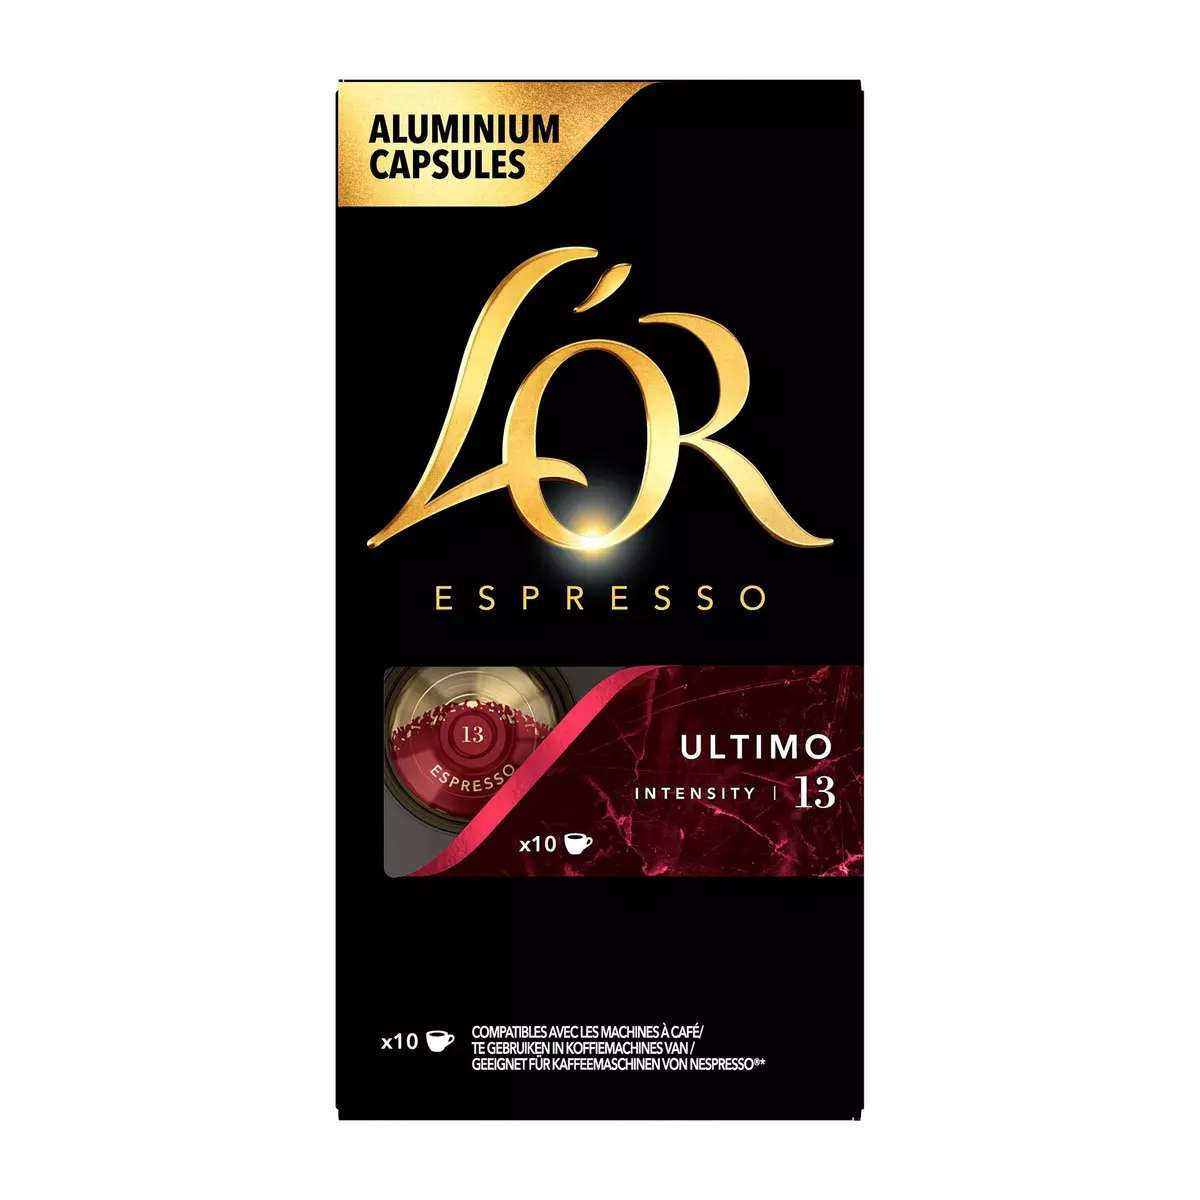 L'OR ESPRESSO Capsules de café Ultimo intensité 13 compatible Nespresso 10 capsules 52g